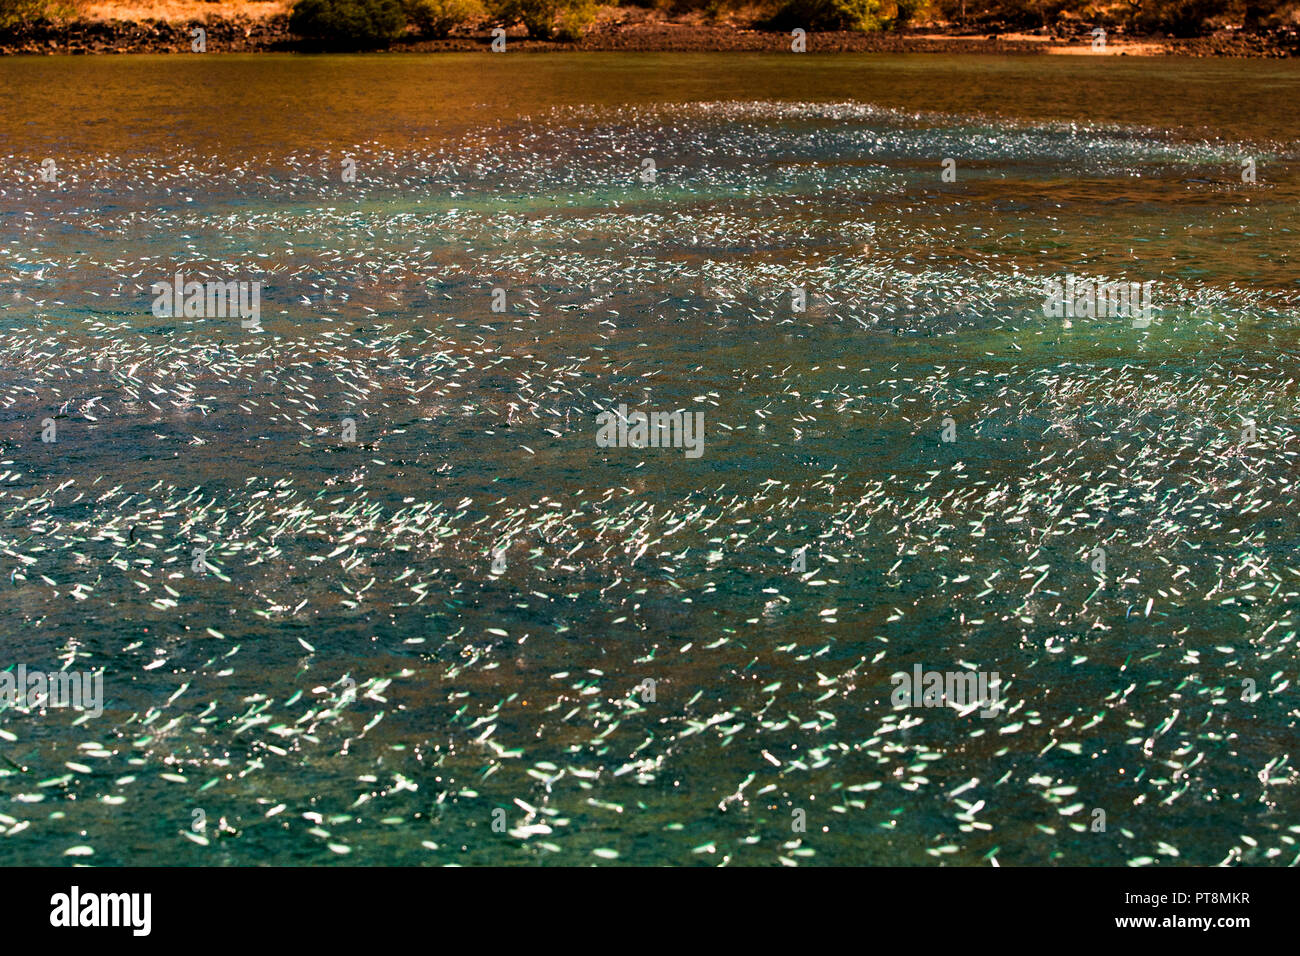 Sardellen springen massenweise aus dem Wasser, was auf das Vorhandensein von Raubfischen hinweist Stockfoto